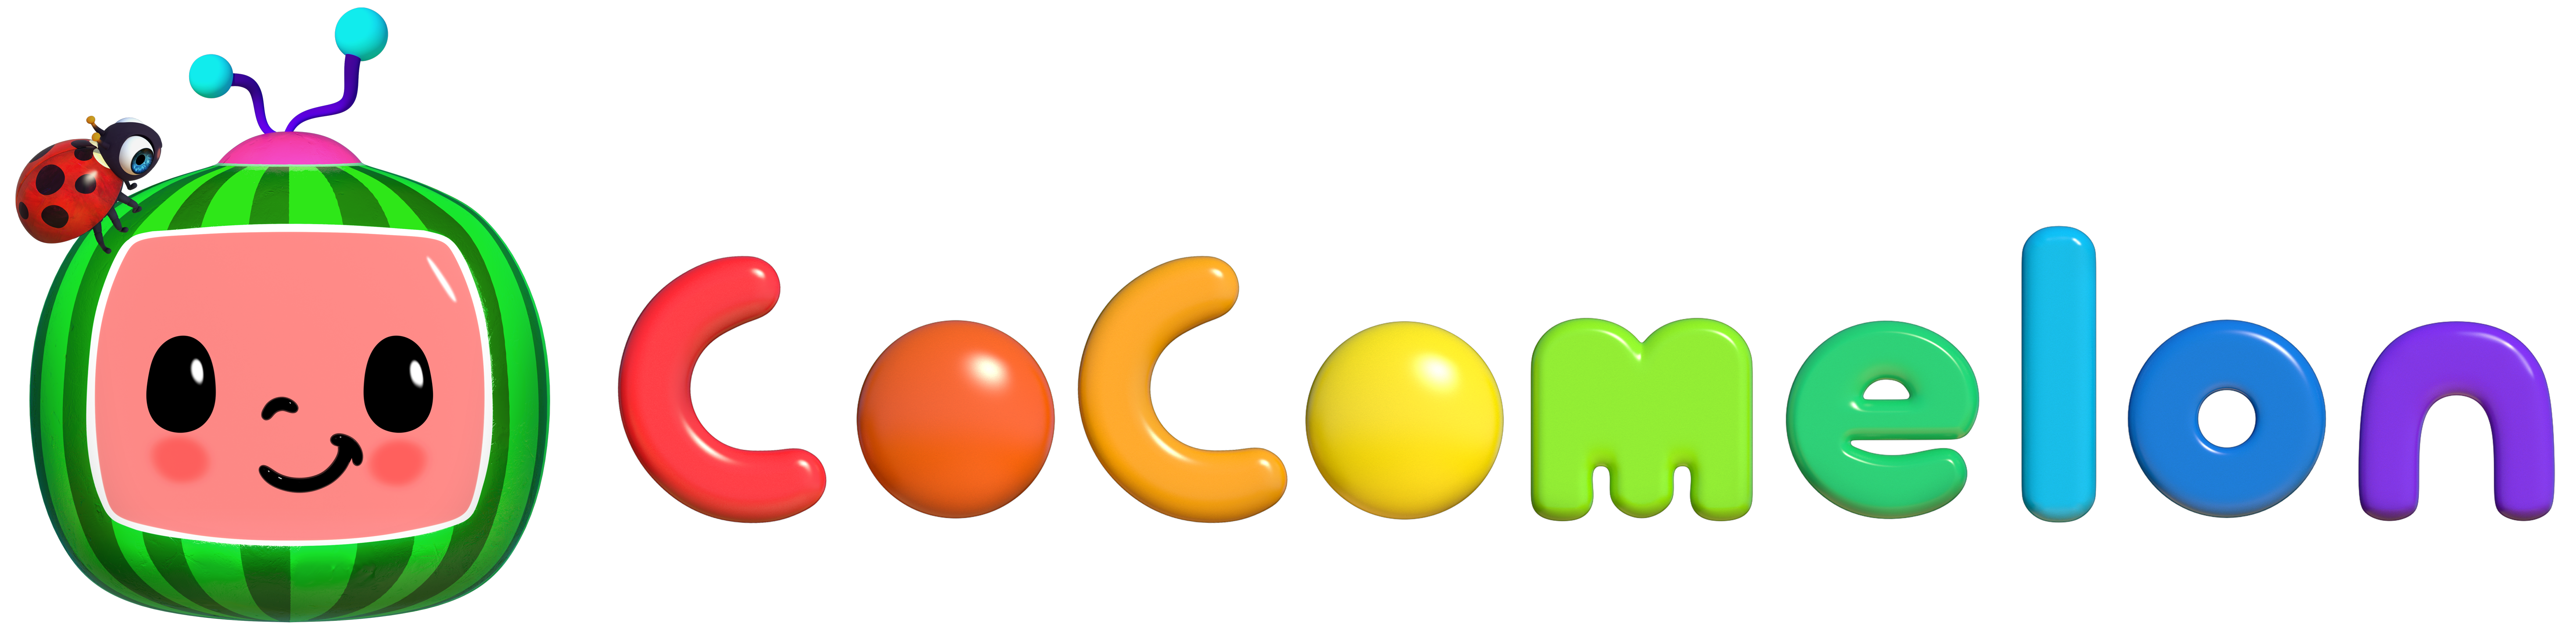 Cocomelon - Awesome, Cocomelon Logo HD wallpaper | Pxfuel